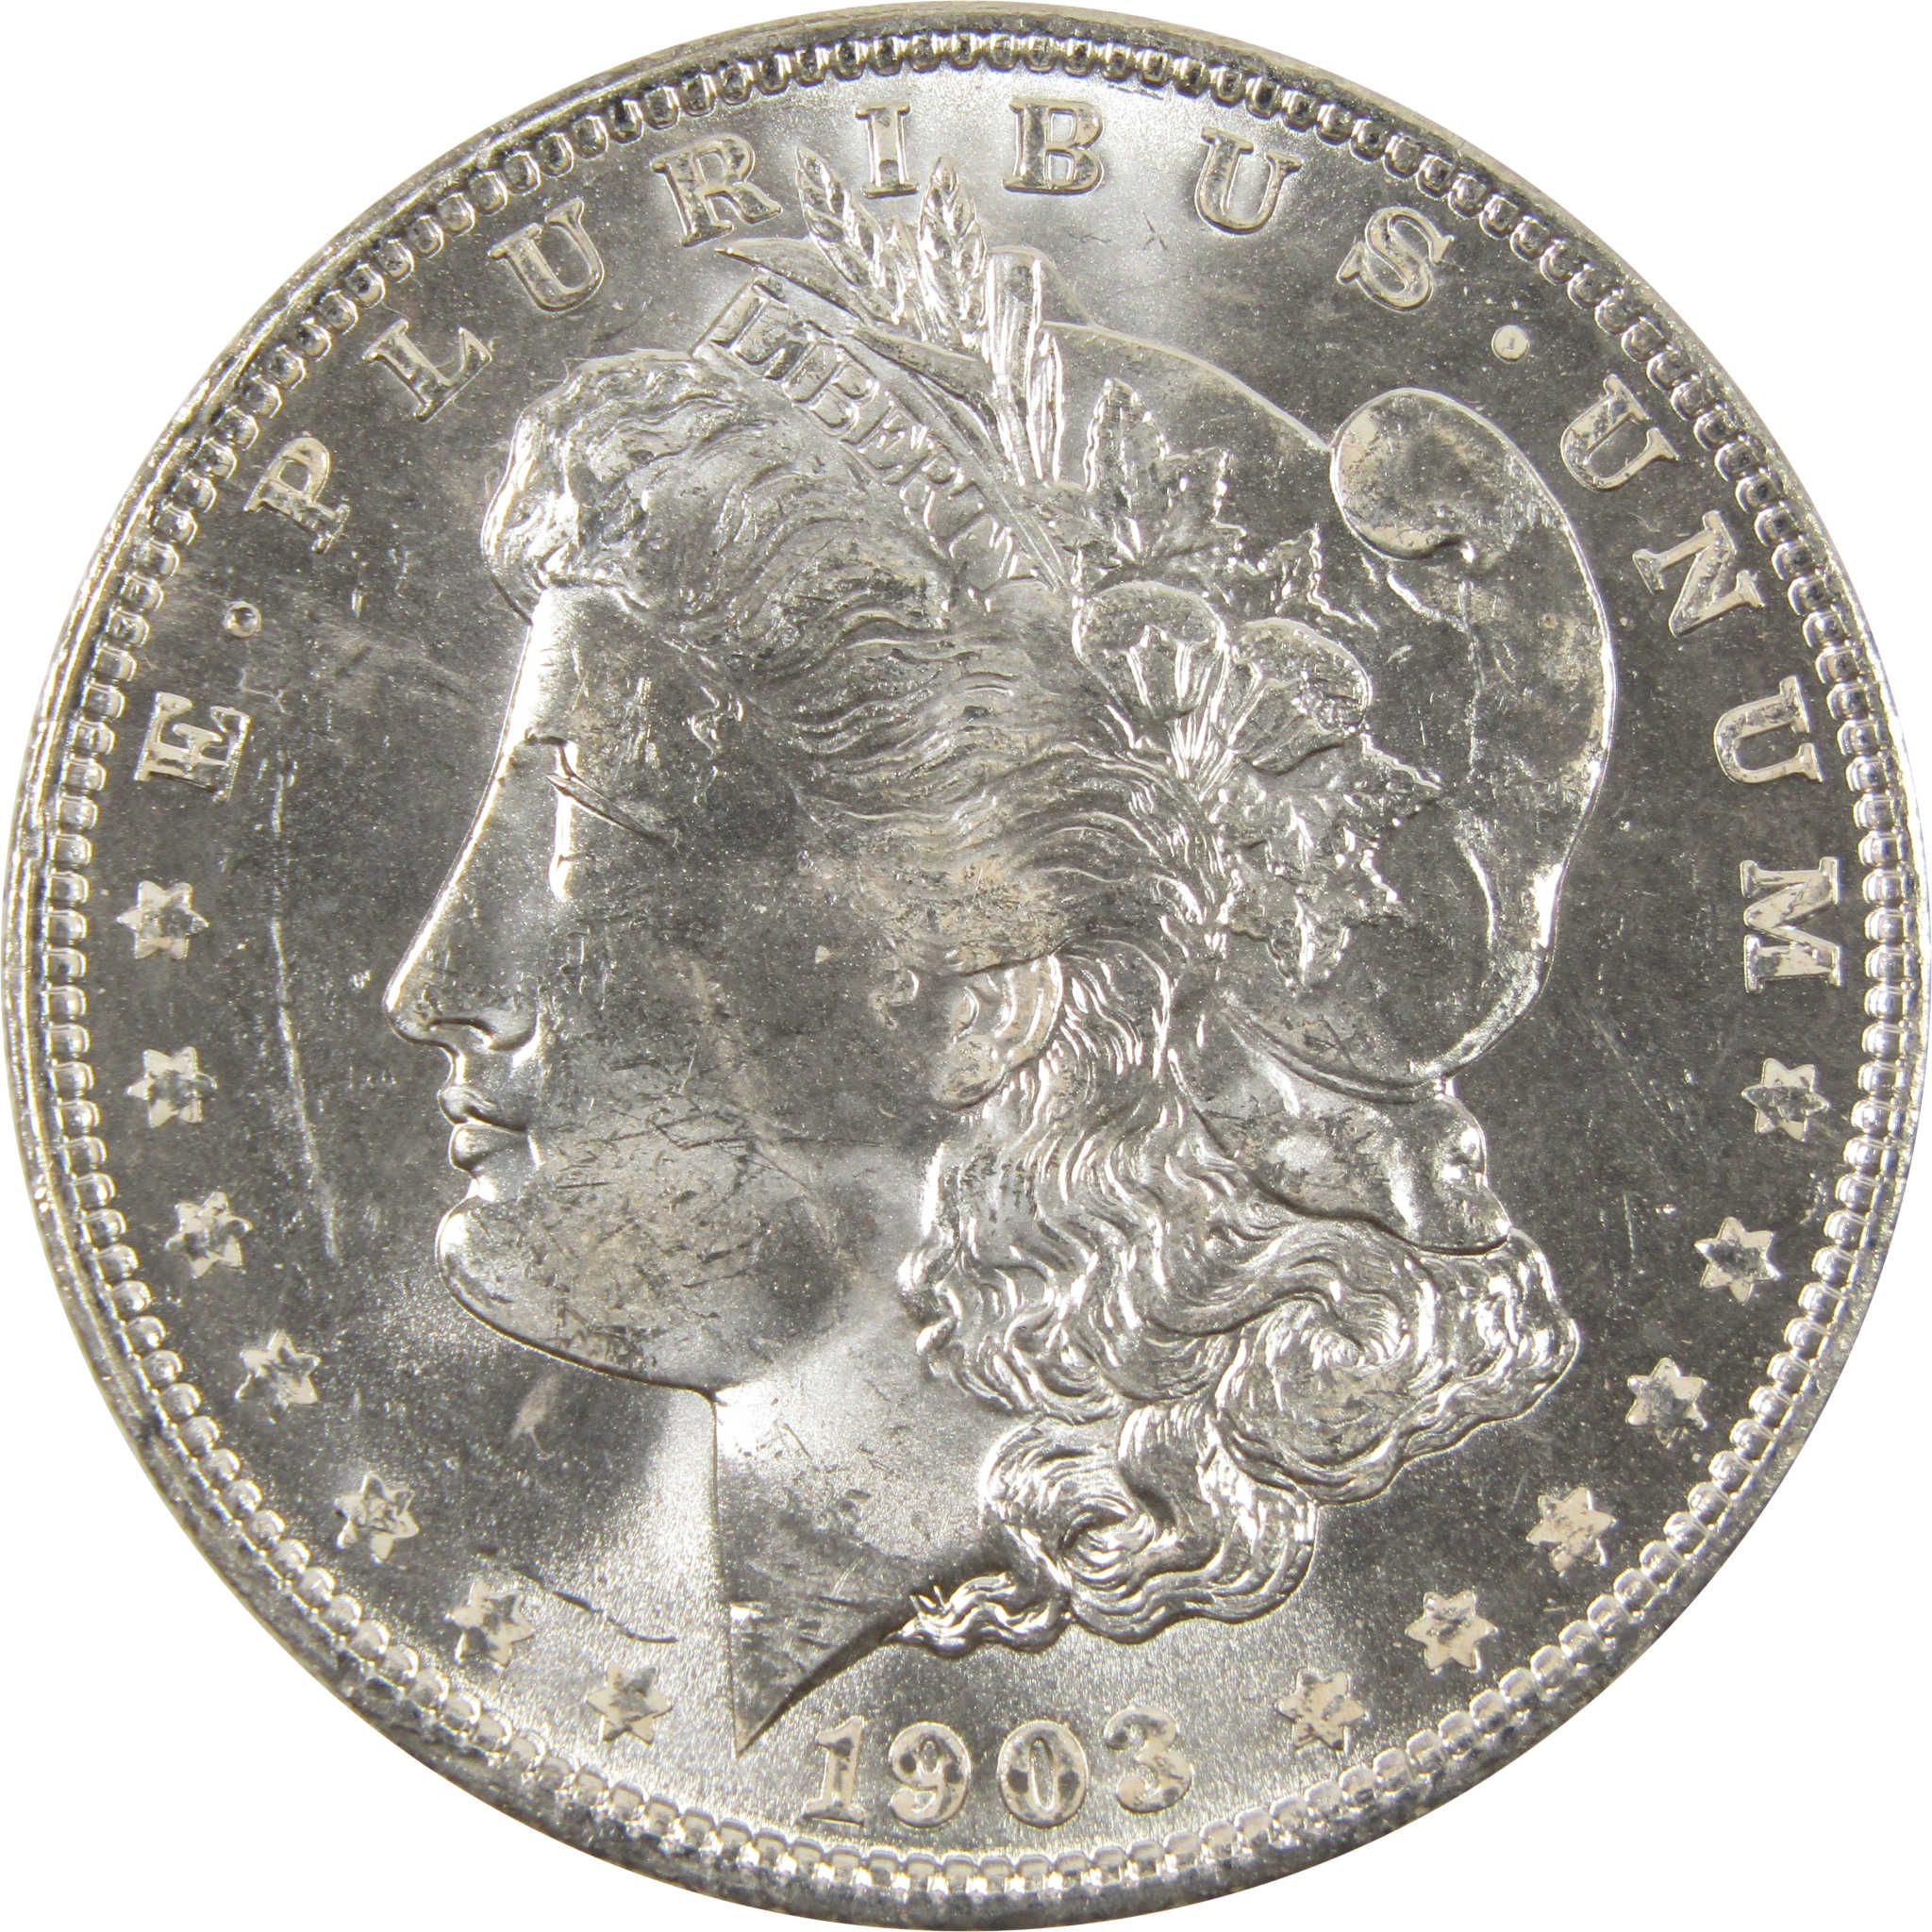 1903 O Morgan Dollar BU Choice Uncirculated 90% Silver $1 SKU:I7514 - Morgan coin - Morgan silver dollar - Morgan silver dollar for sale - Profile Coins &amp; Collectibles